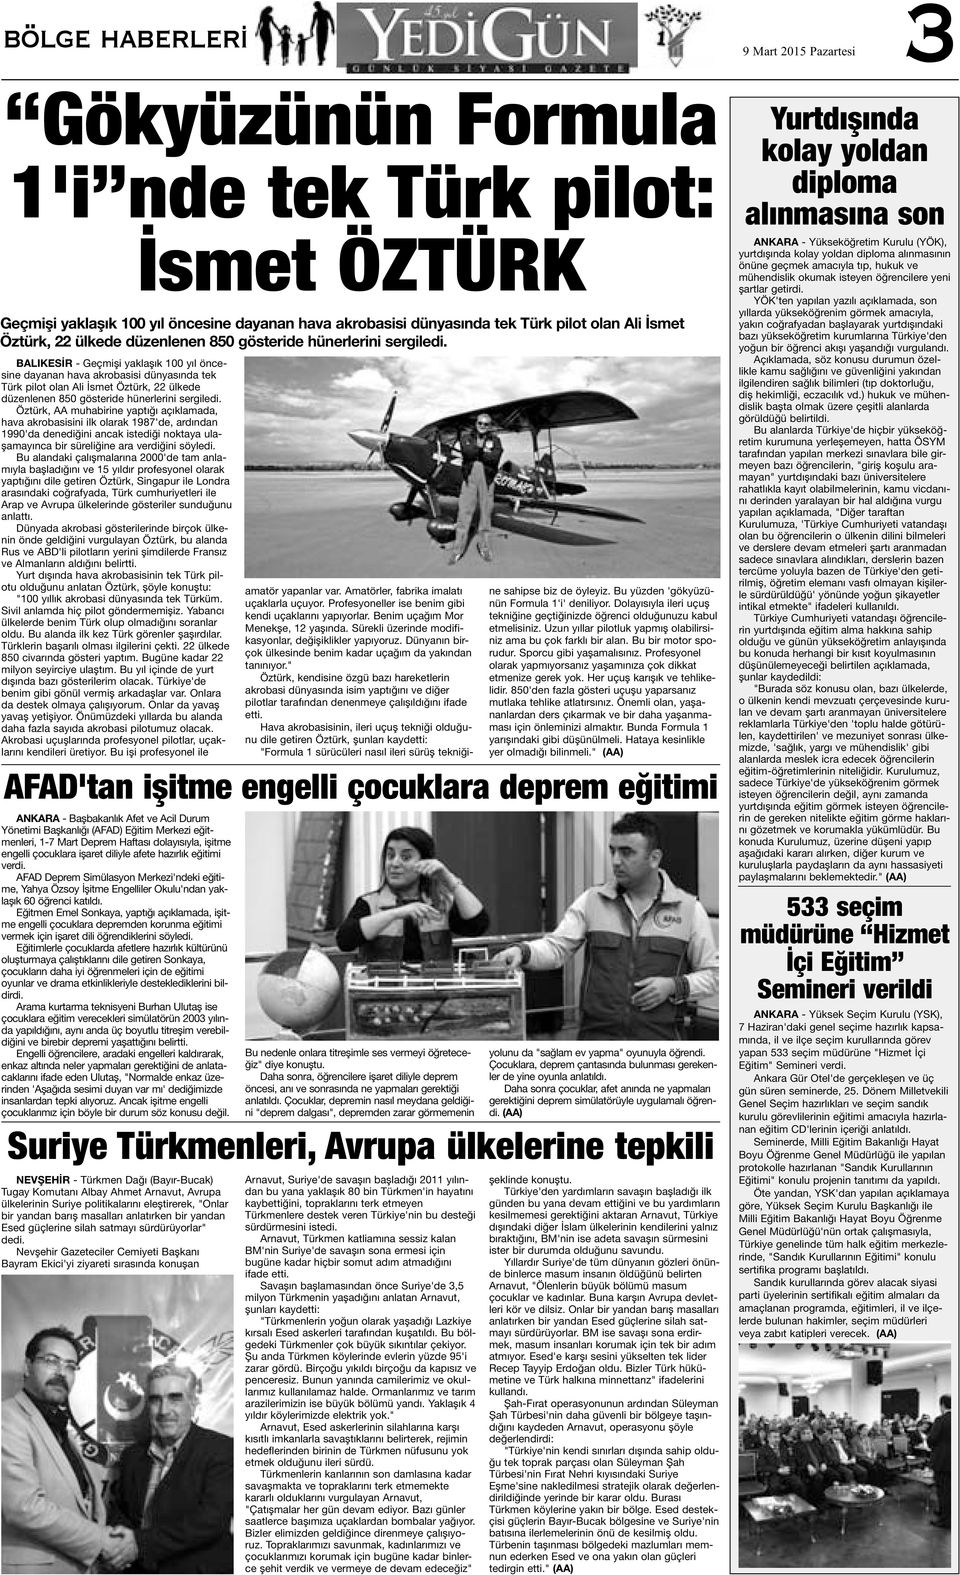 BALIKESİR - Geçmişi yaklaşık 100 yıl öncesine dayanan hava akrobasisi dünyasında tek Türk pilot olan Ali İsmet  Öztürk, AA muhabirine yaptığı açıklamada, hava akrobasisini ilk olarak 1987'de,